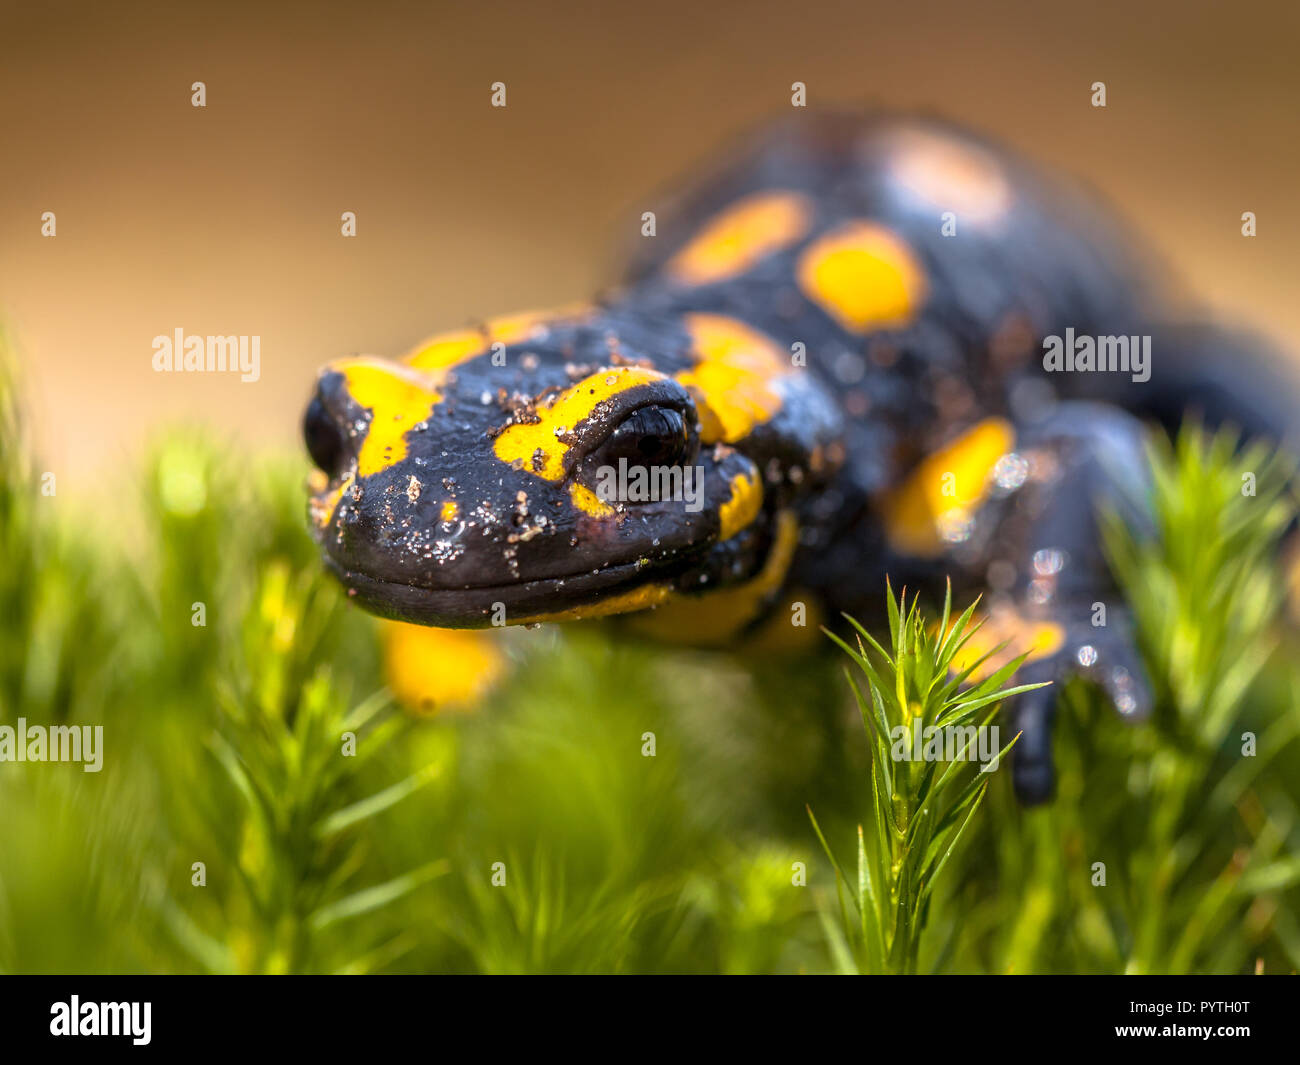 Salamandra pezzata newt (Salamandre salamandre) vivono in Europa centrale foreste decidue e sono in declino degli anfibi in numeri Foto Stock